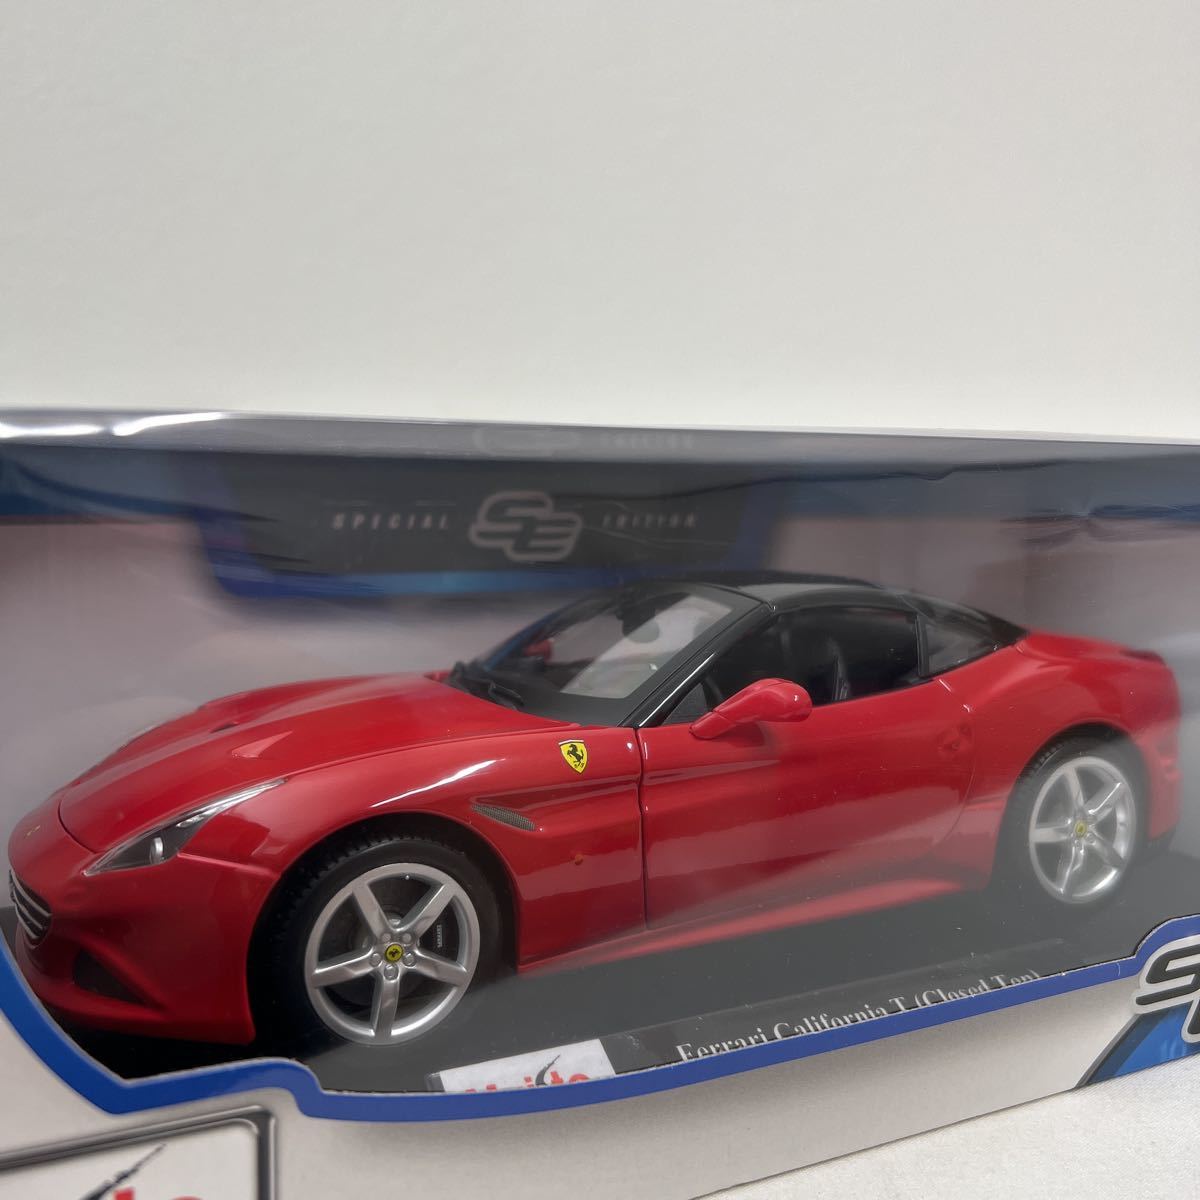 Maisto 1/18 Ferrari California T Closed Top Red マイスト スペシャルエディション フェラーリ カリフォルニア ミニカー モデルカー_画像1